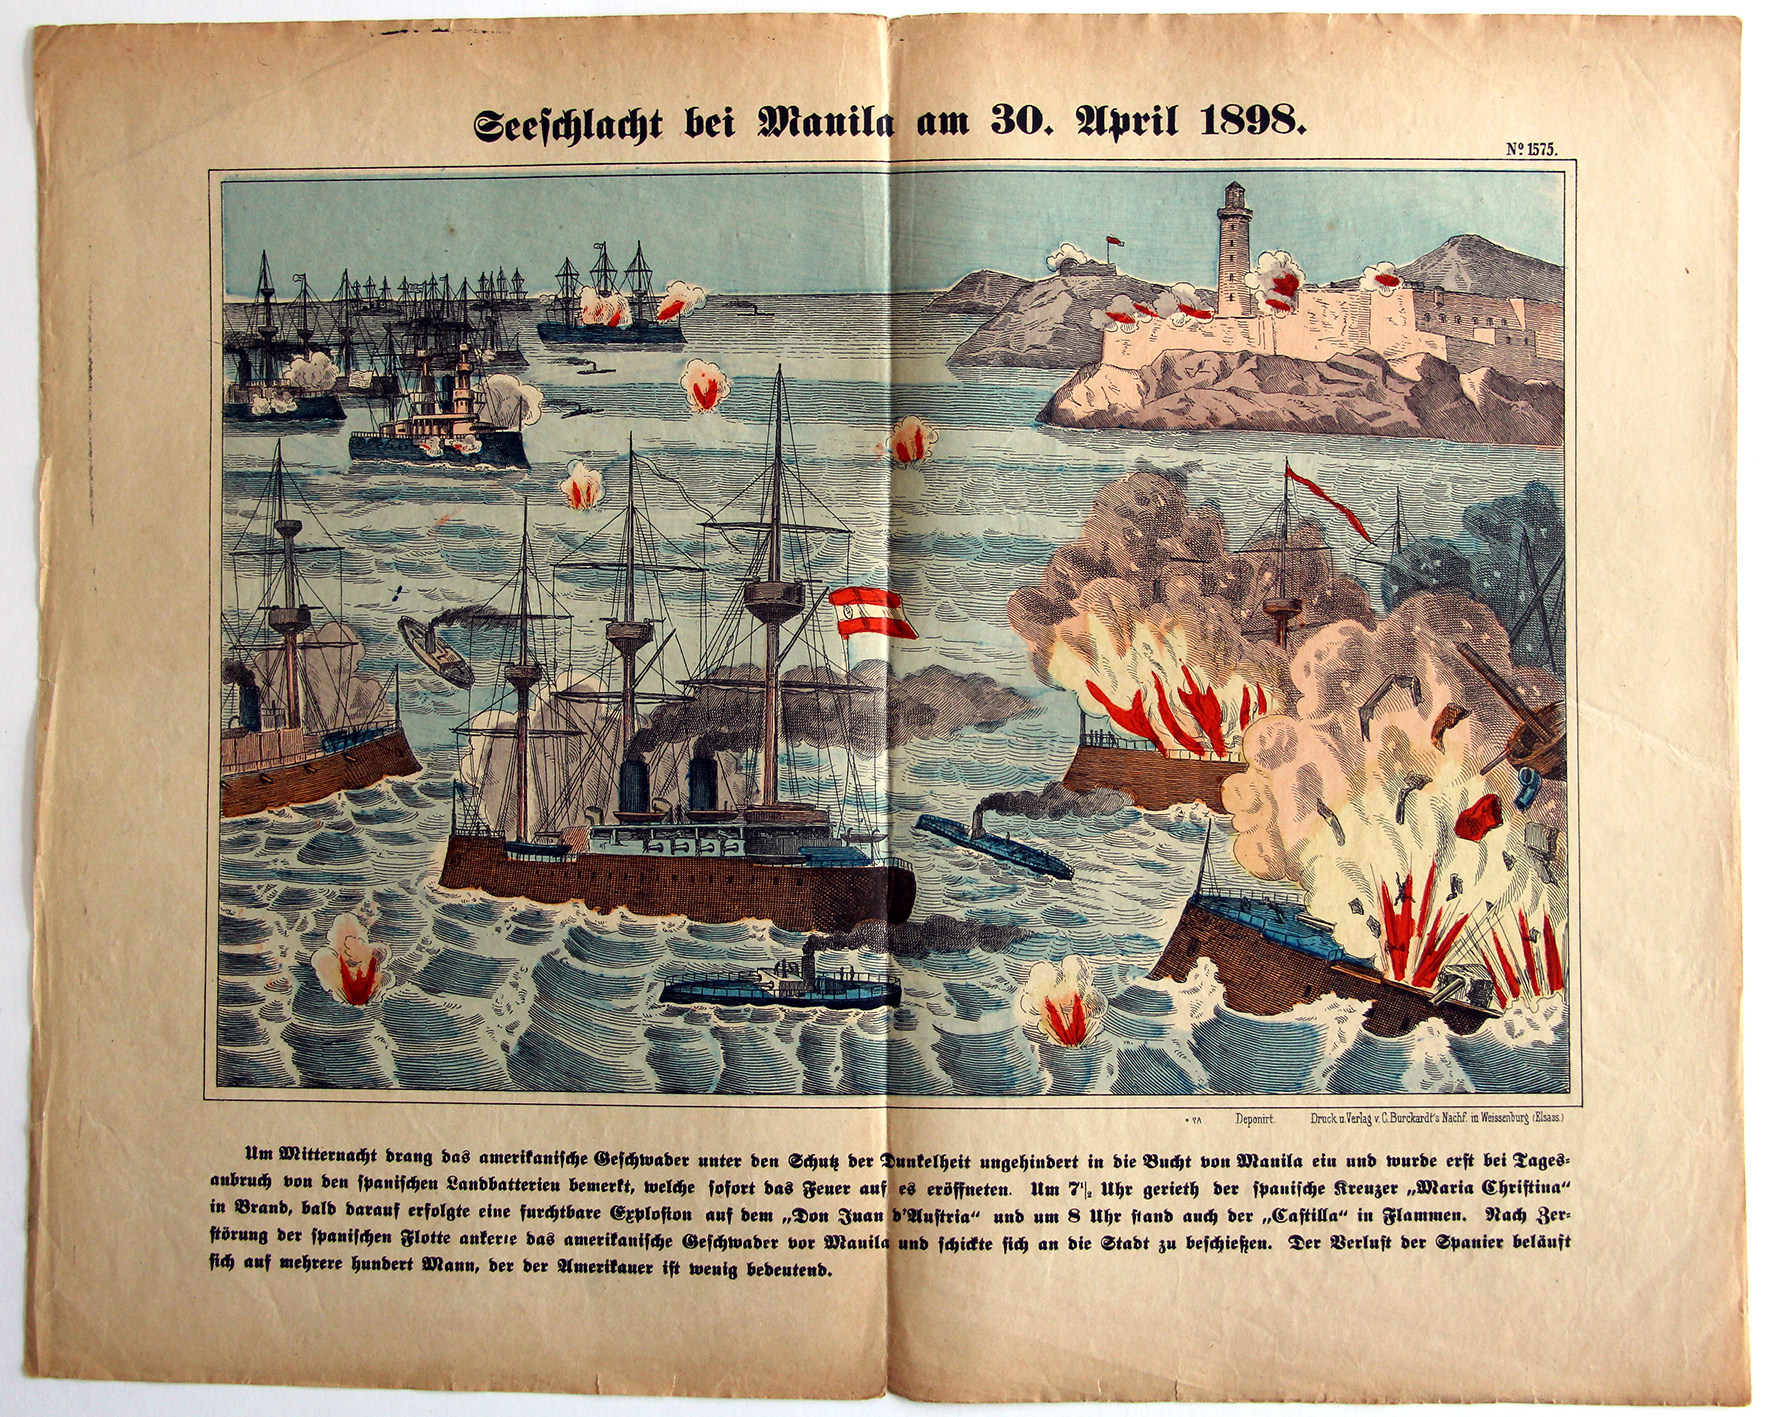 Planche imagerie Wissembourg - C.Burckardt - Bataille Navale de Manila 30 avril 1898 - Espagne - Etats-Unis - Bataille de la baie de Manille - Guerre hispano-américaine.